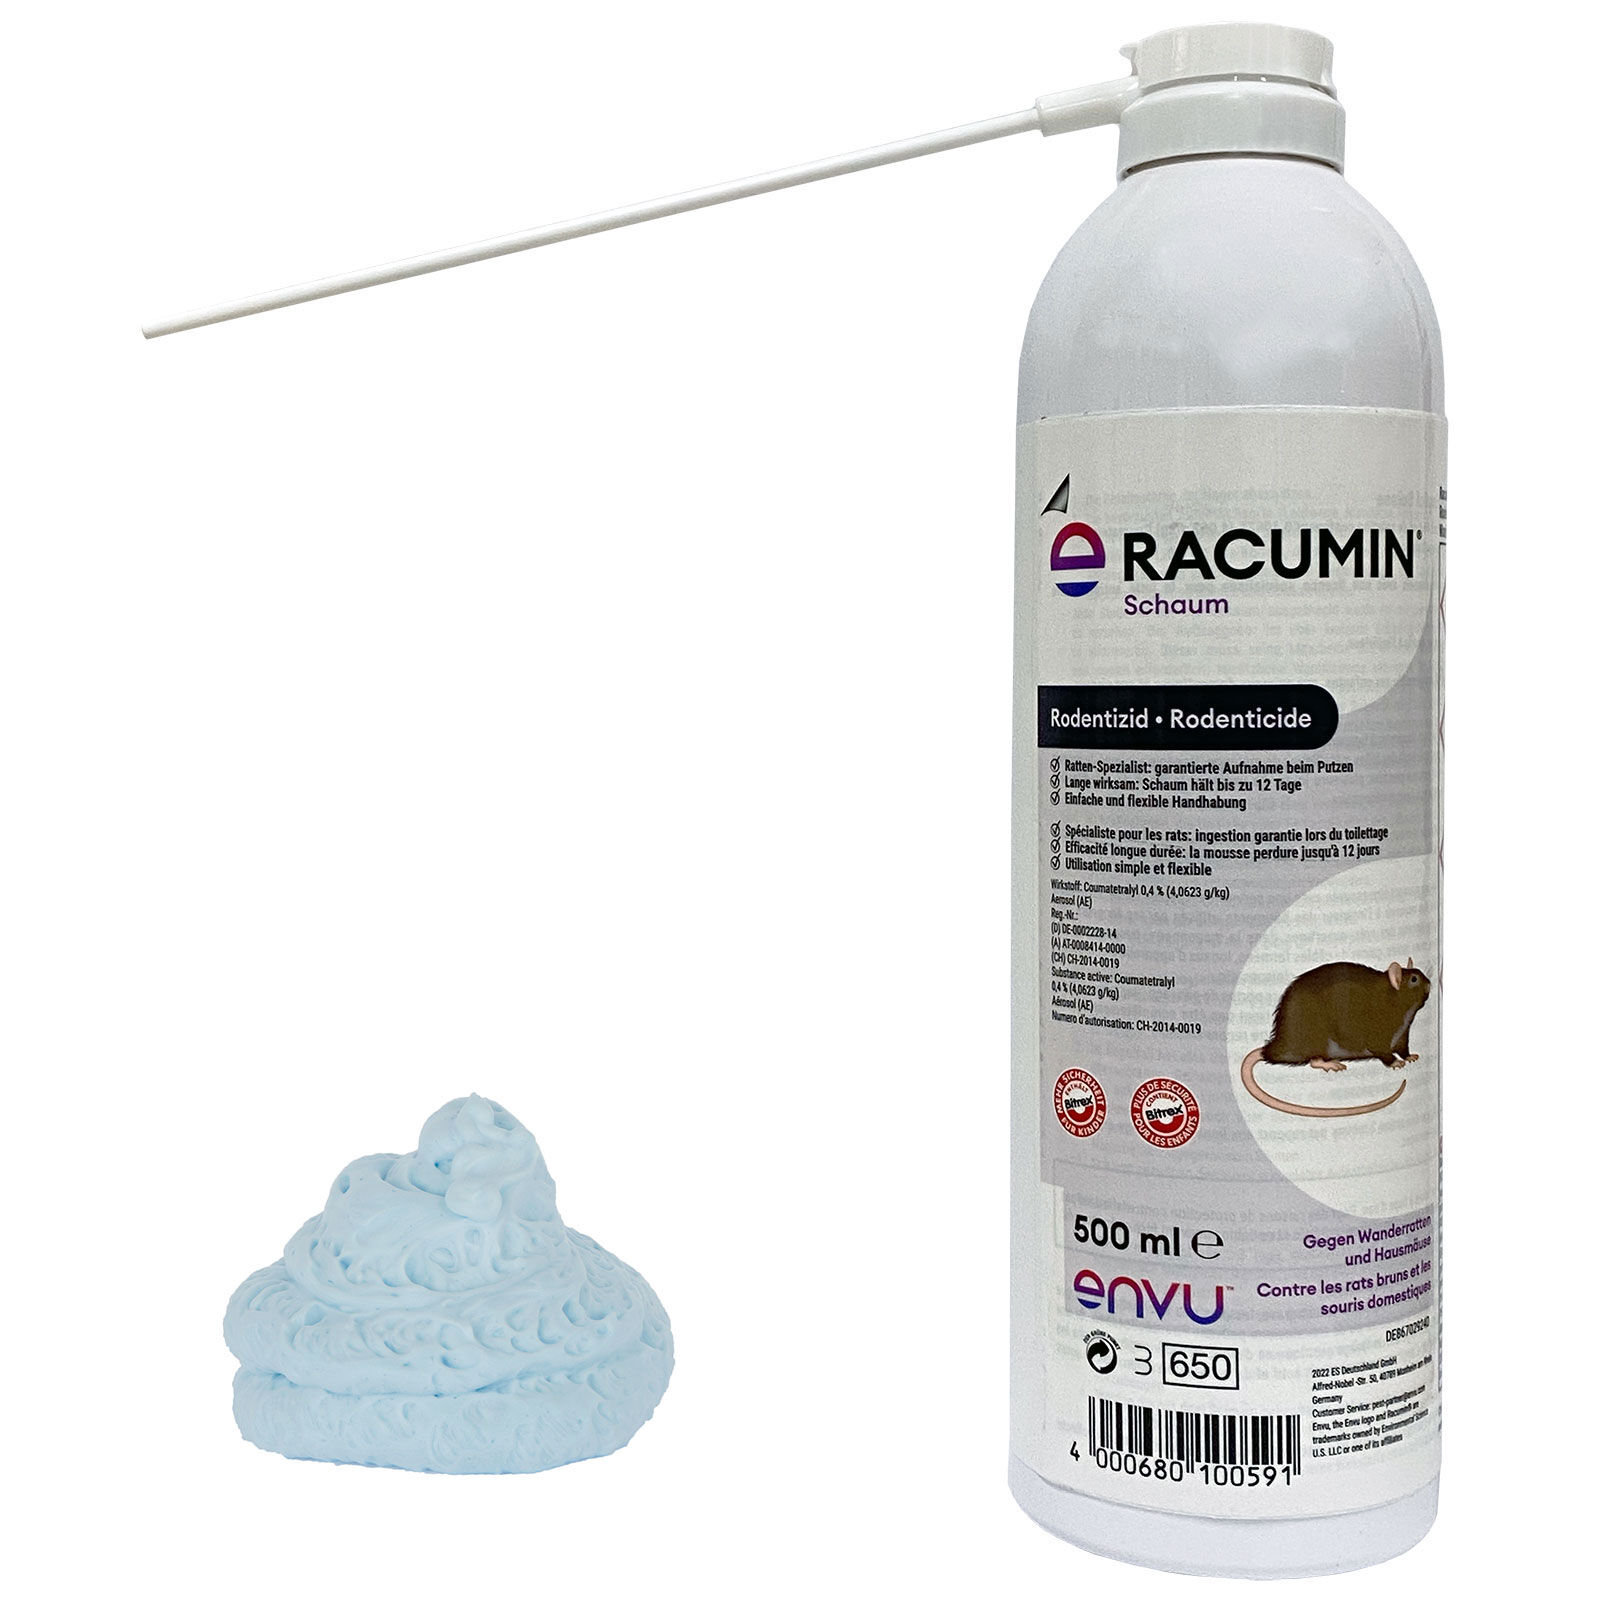 Racumin Schaum - Bayer 500ml (Comatetralyl 0,4%) EMPFEHLUNG:  Unterstützendes zusätzliches Mittel zu Standardköder